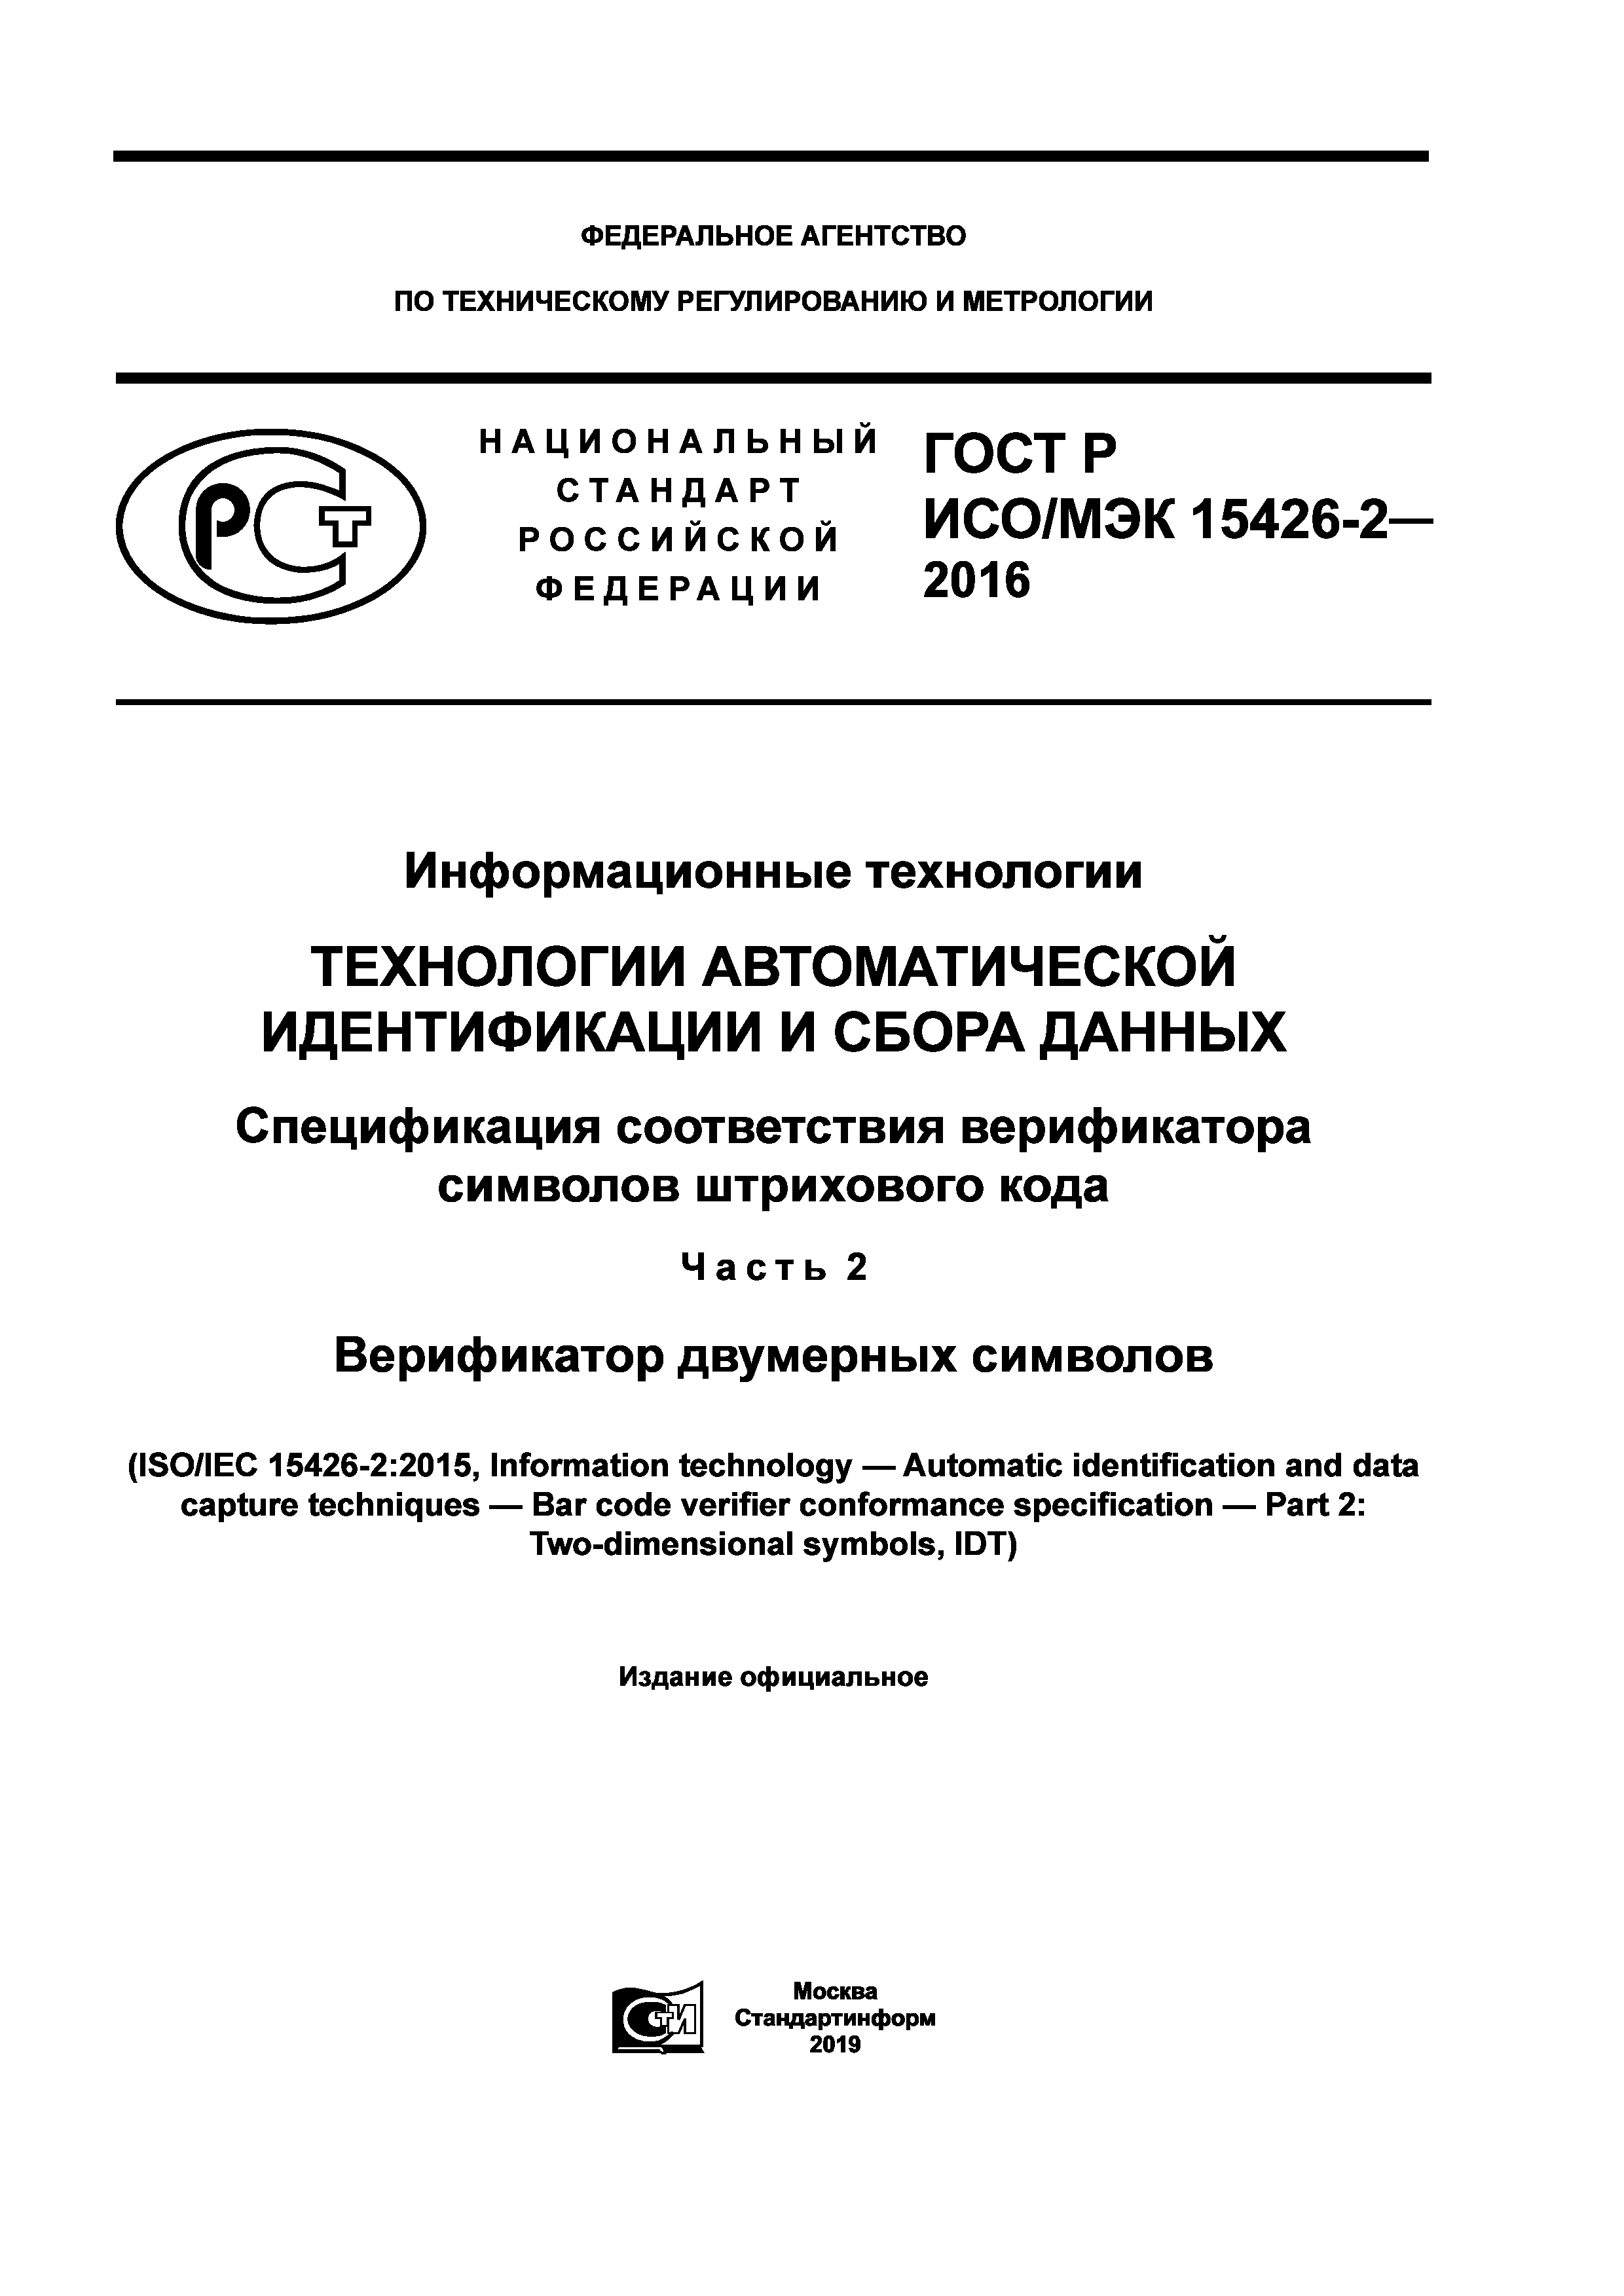 ГОСТ Р ИСО/МЭК 15426-2-2016